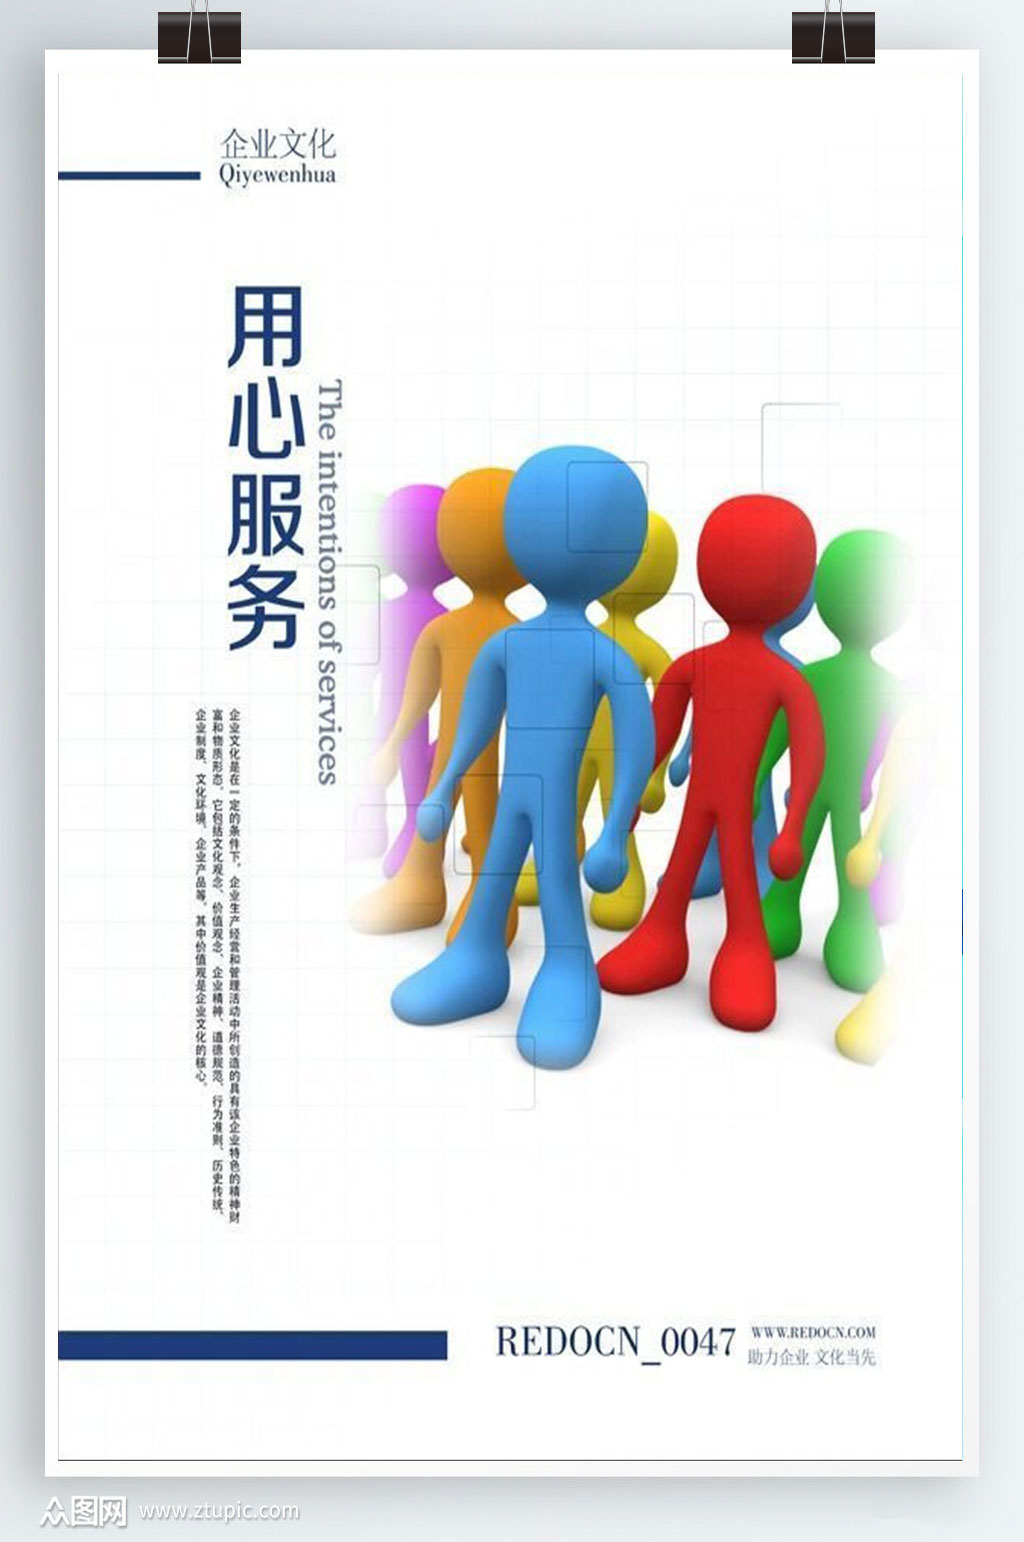 免费下载,本作品是由阿荟荟上传的原创平面广告素材,适用于海报设计